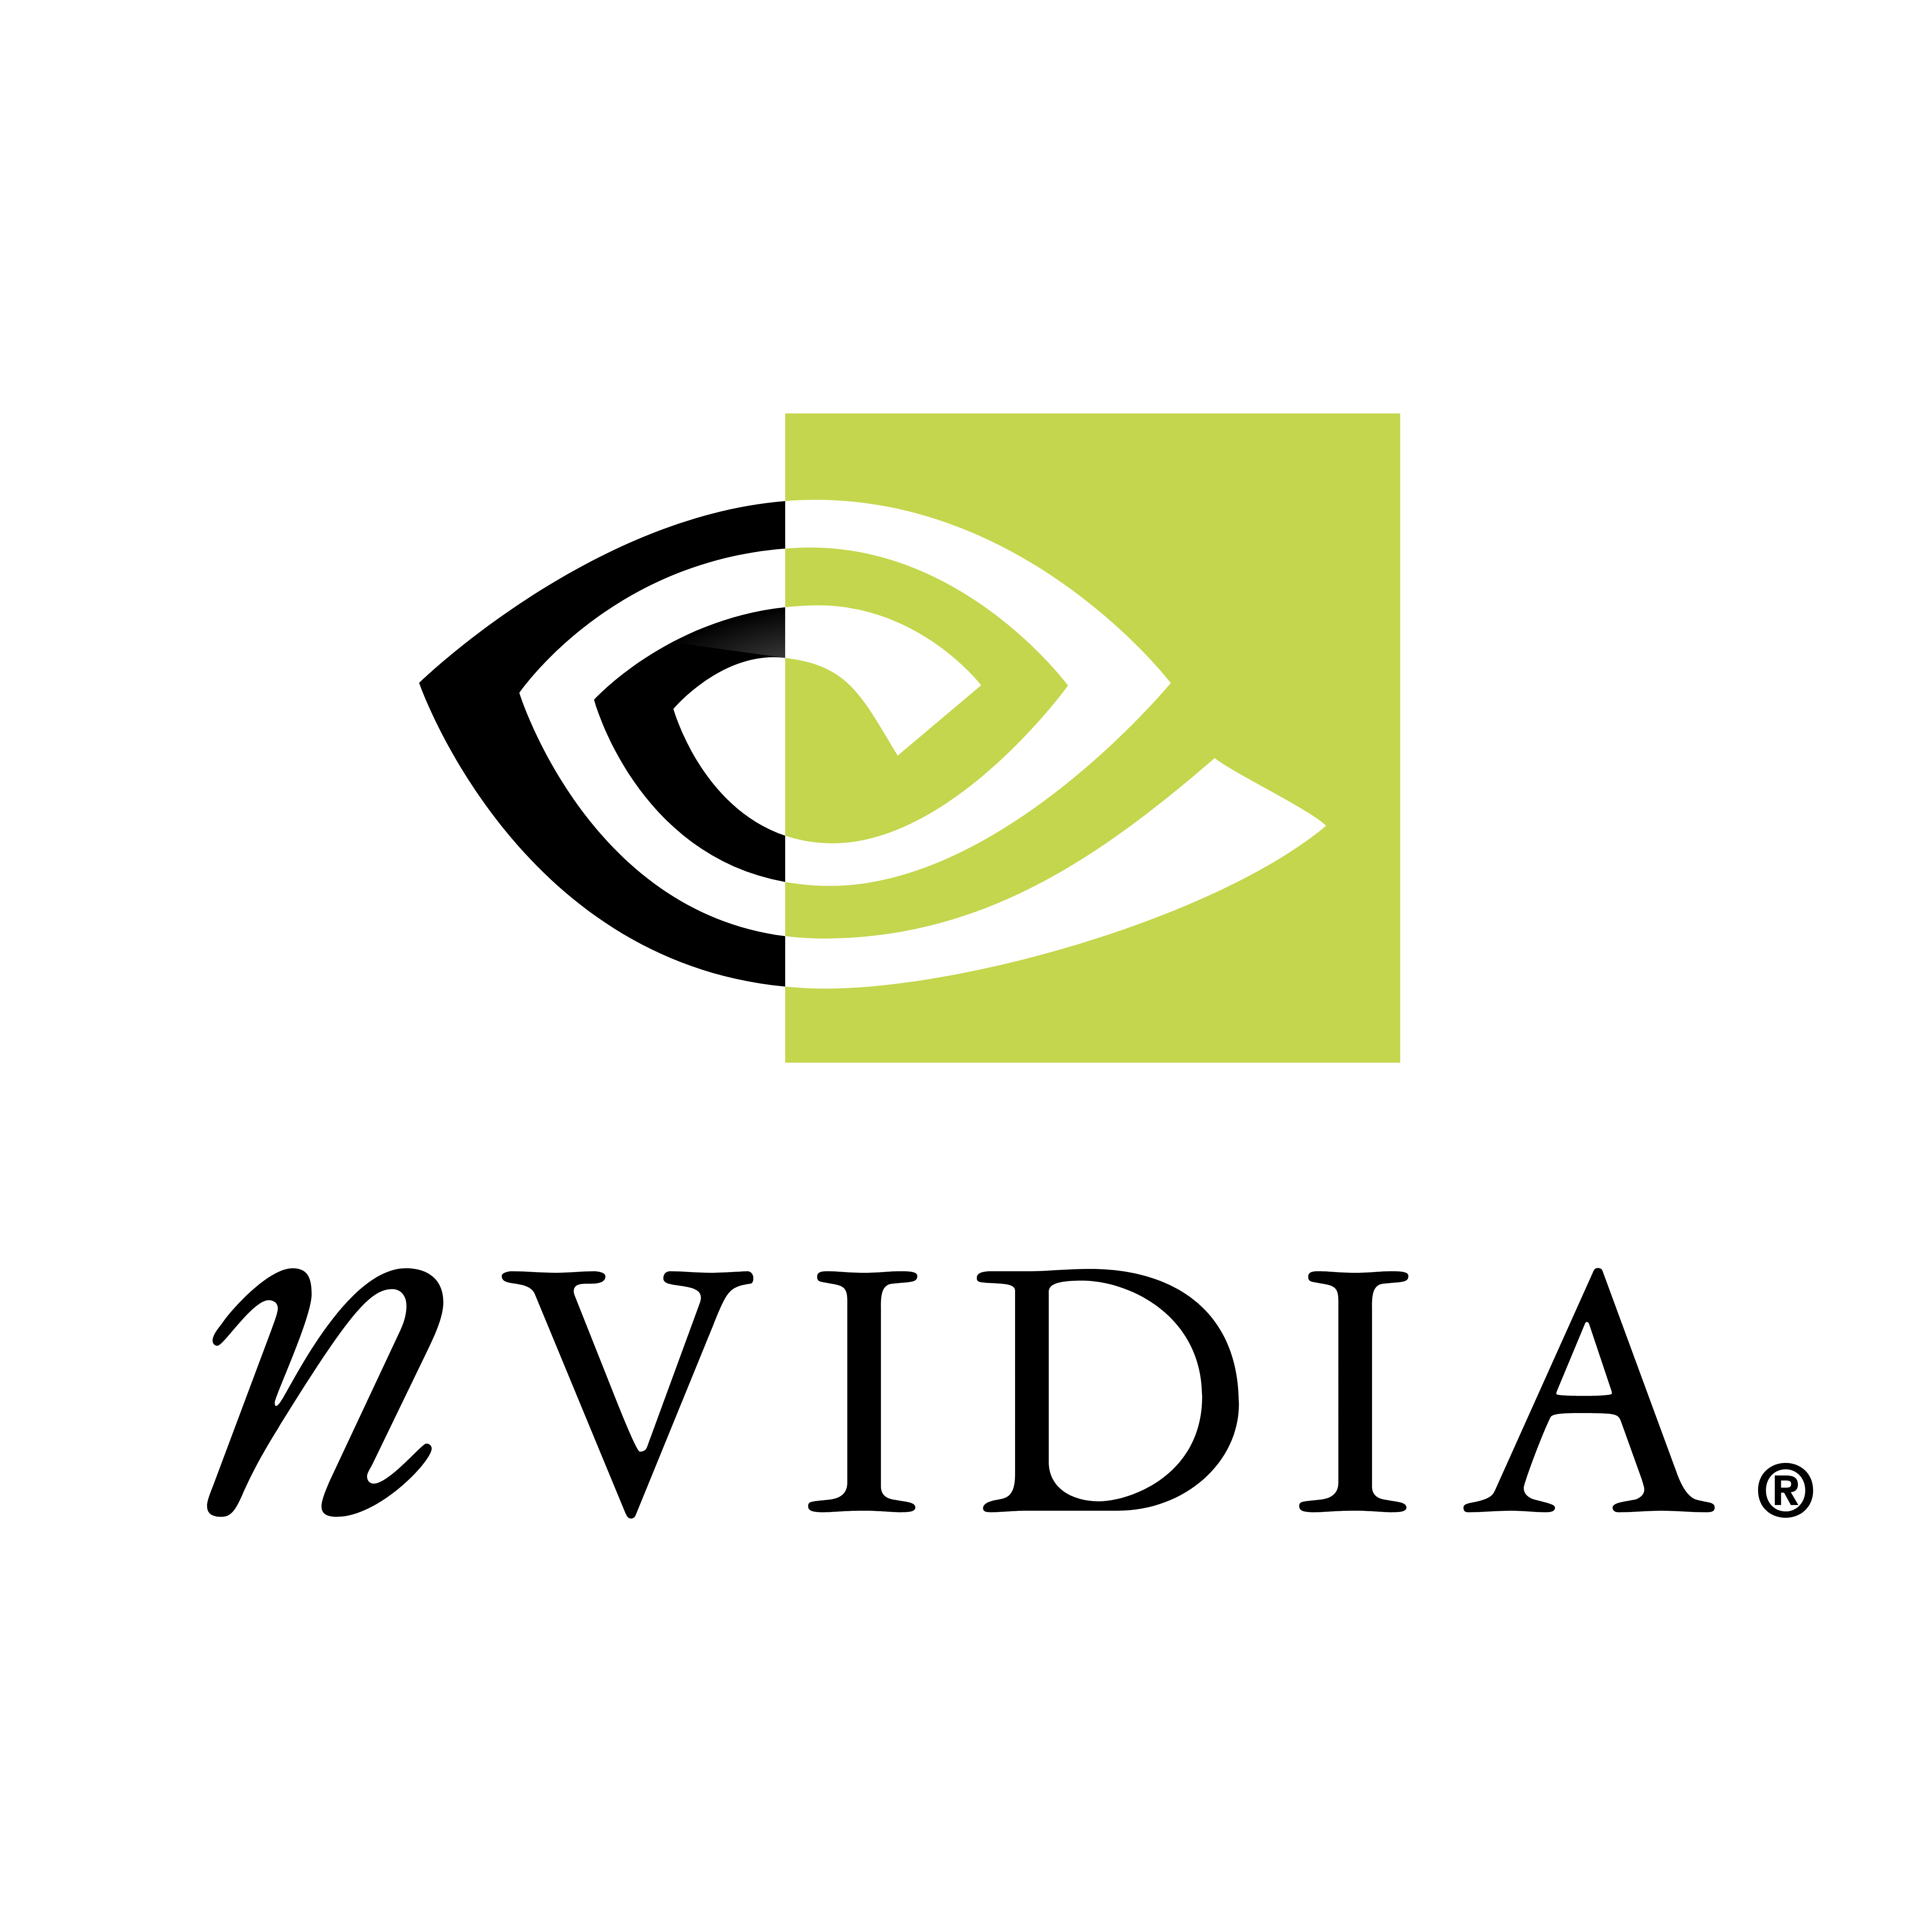 Nvidia Logos Download